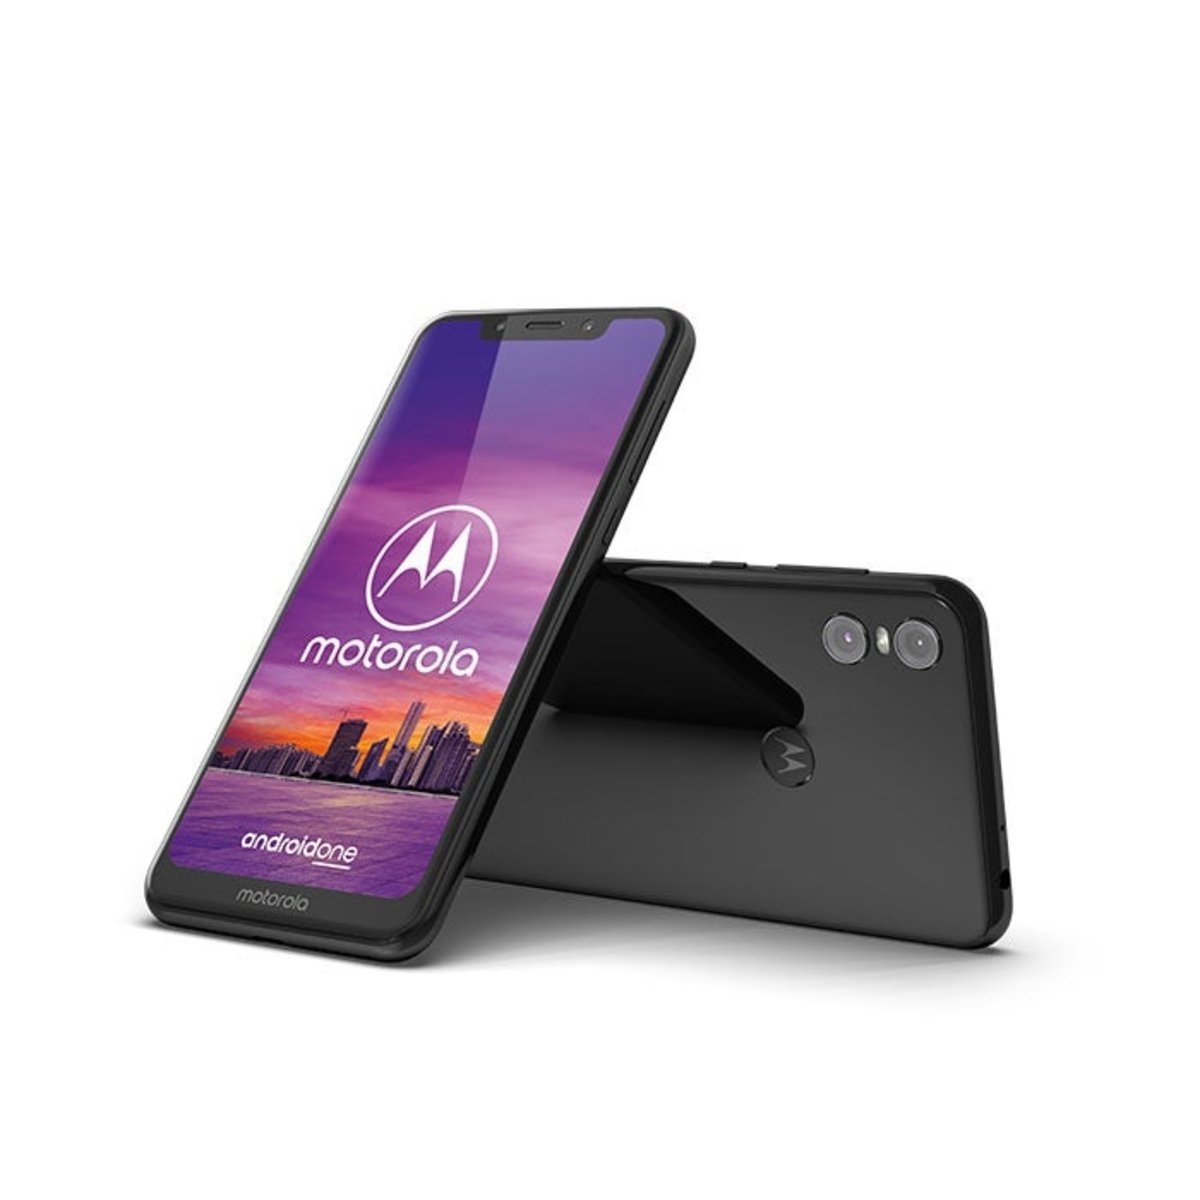 A la venta en España el nuevo Moto One, la experiencia Android One de Motorola al mejor precio y en exclusiva con Vodafone